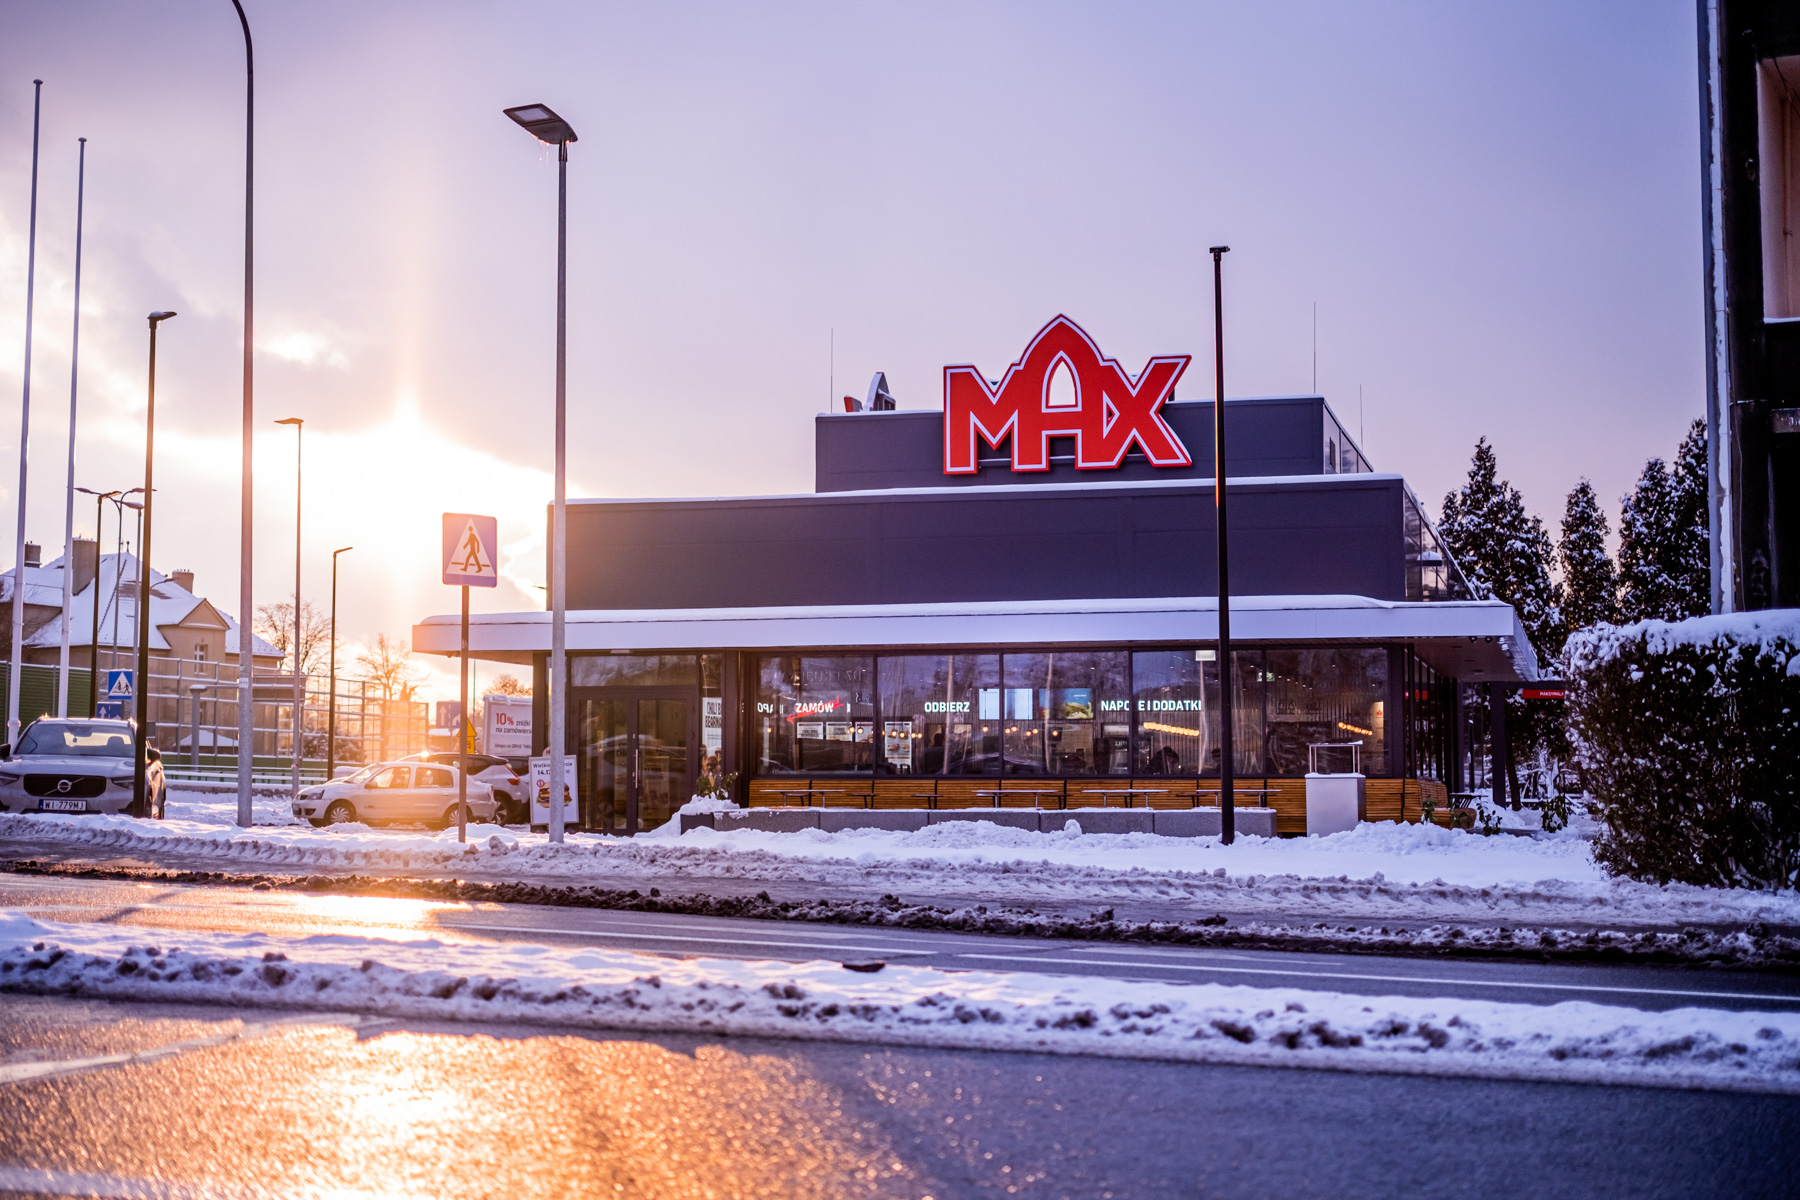 Images MAX Premium Burgers